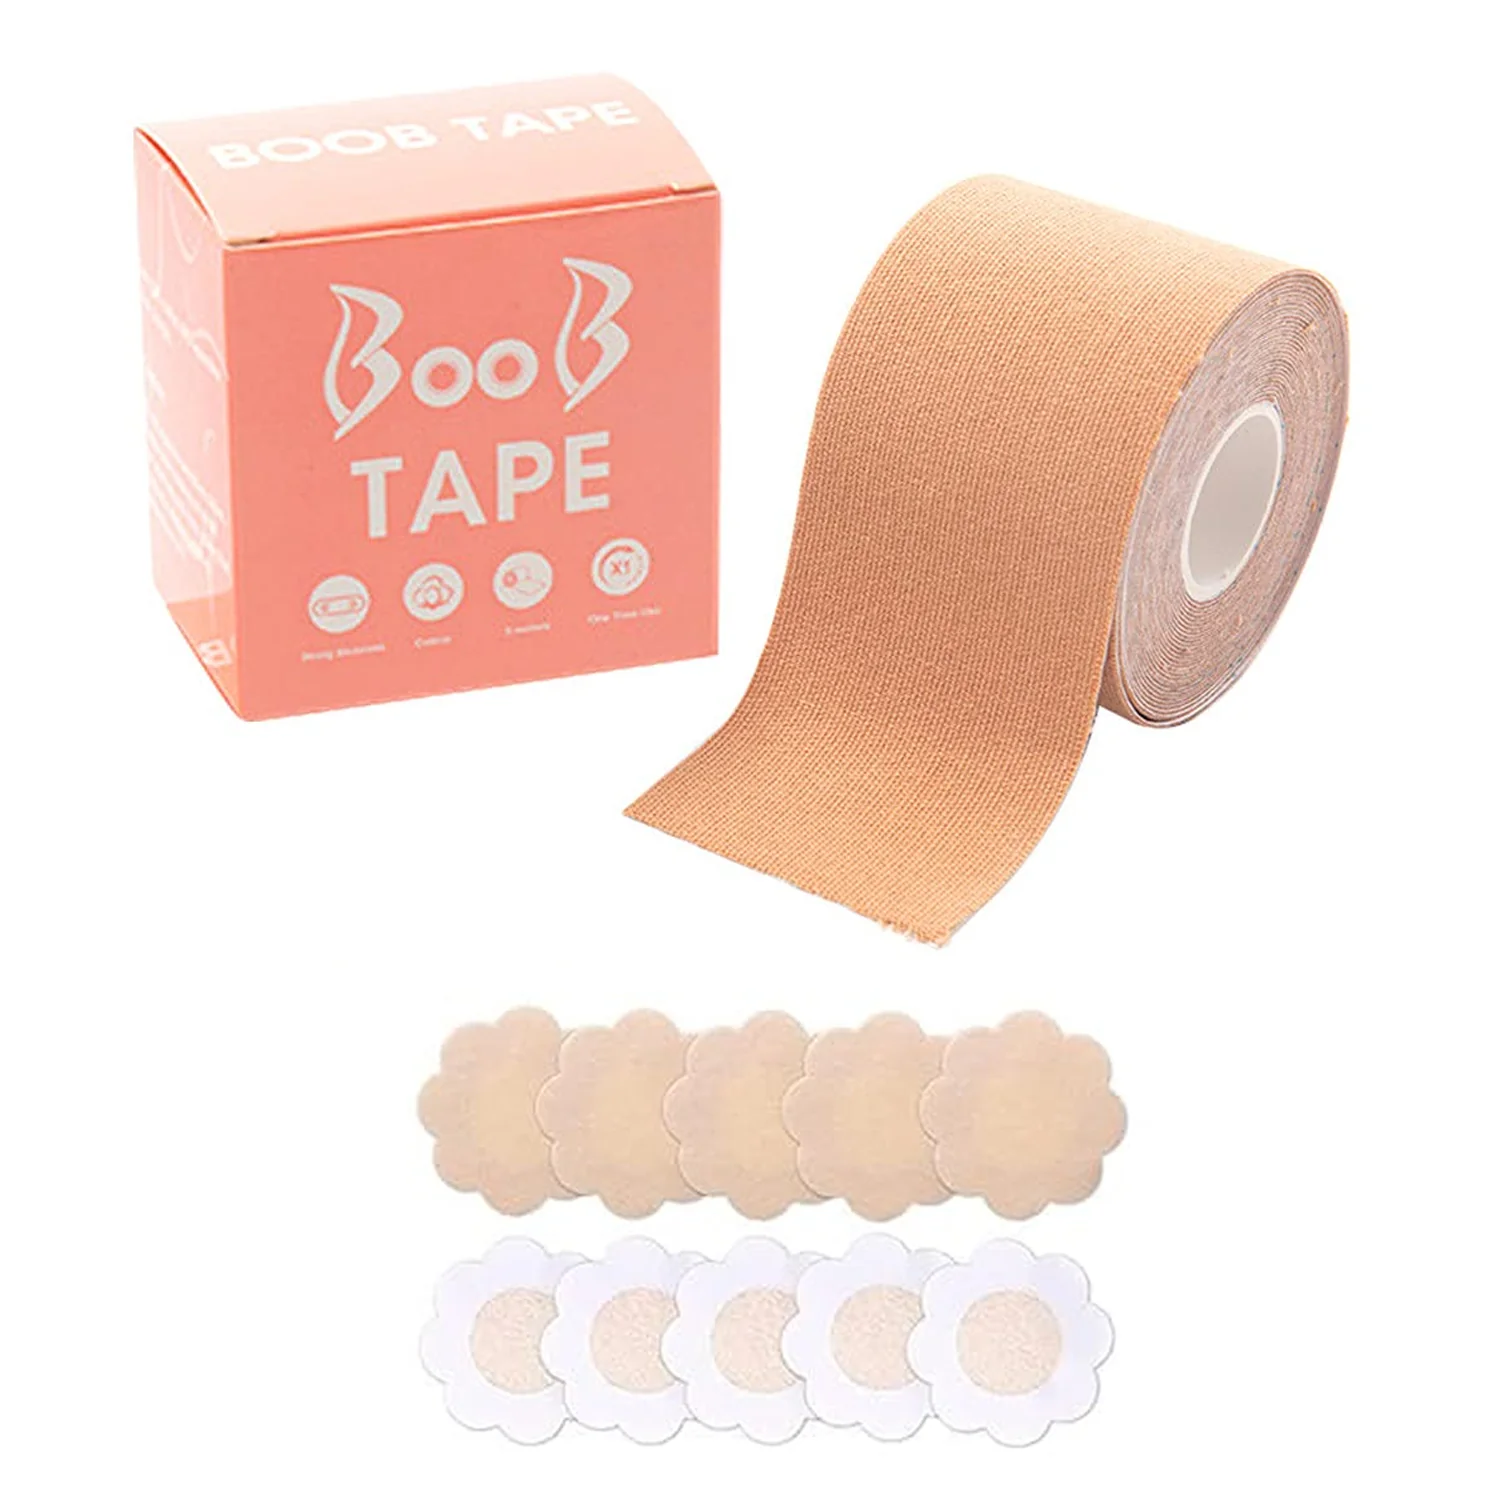 Breast Lift Tape Easy Lift Adhesive Bra - 3 Pairs